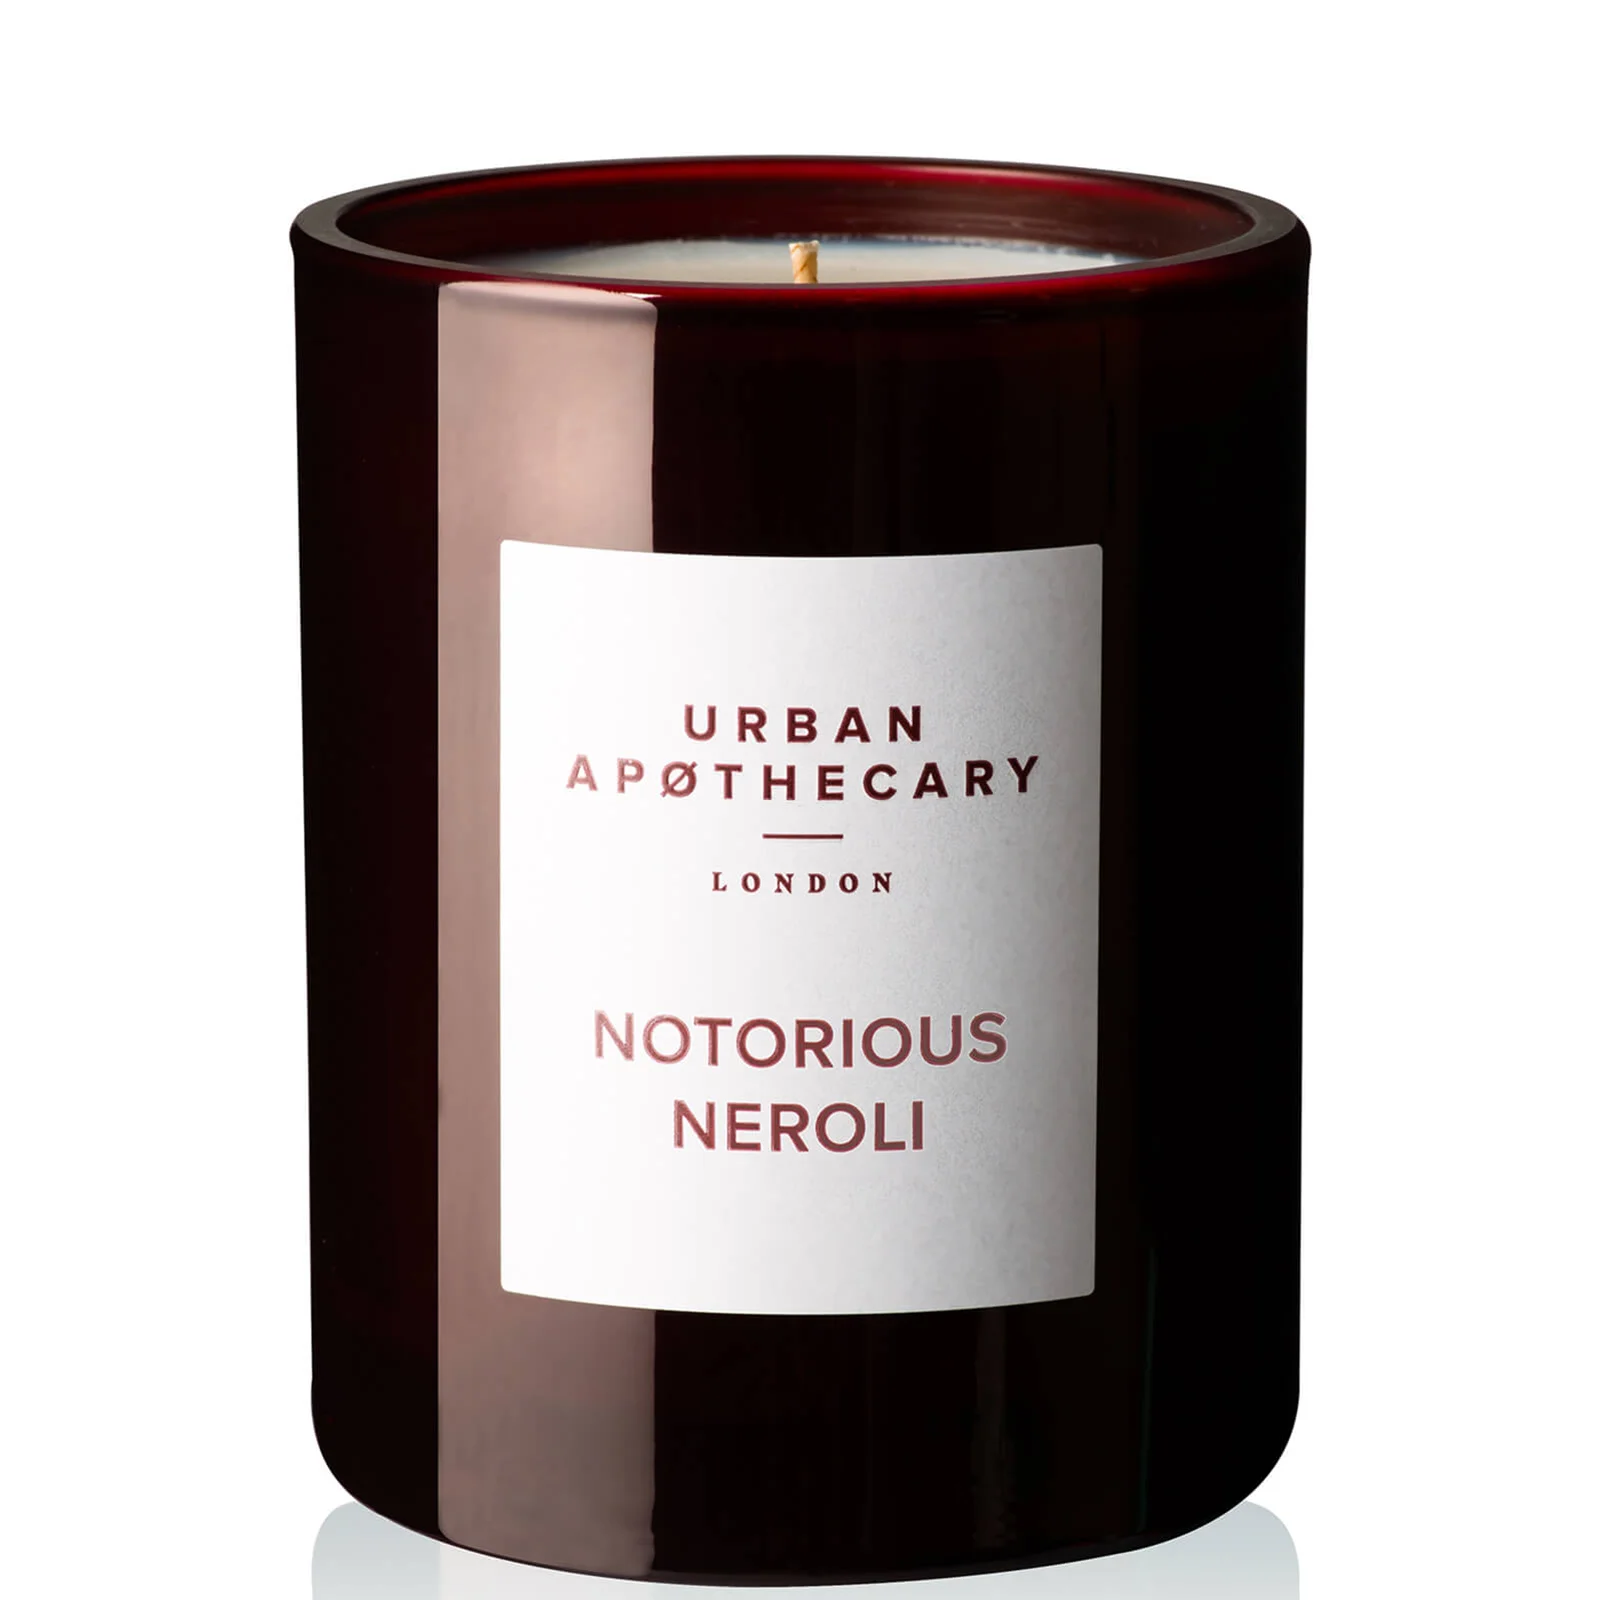 Urban Apothecary Notorious Neroli Luxury Candle 300g Image 1